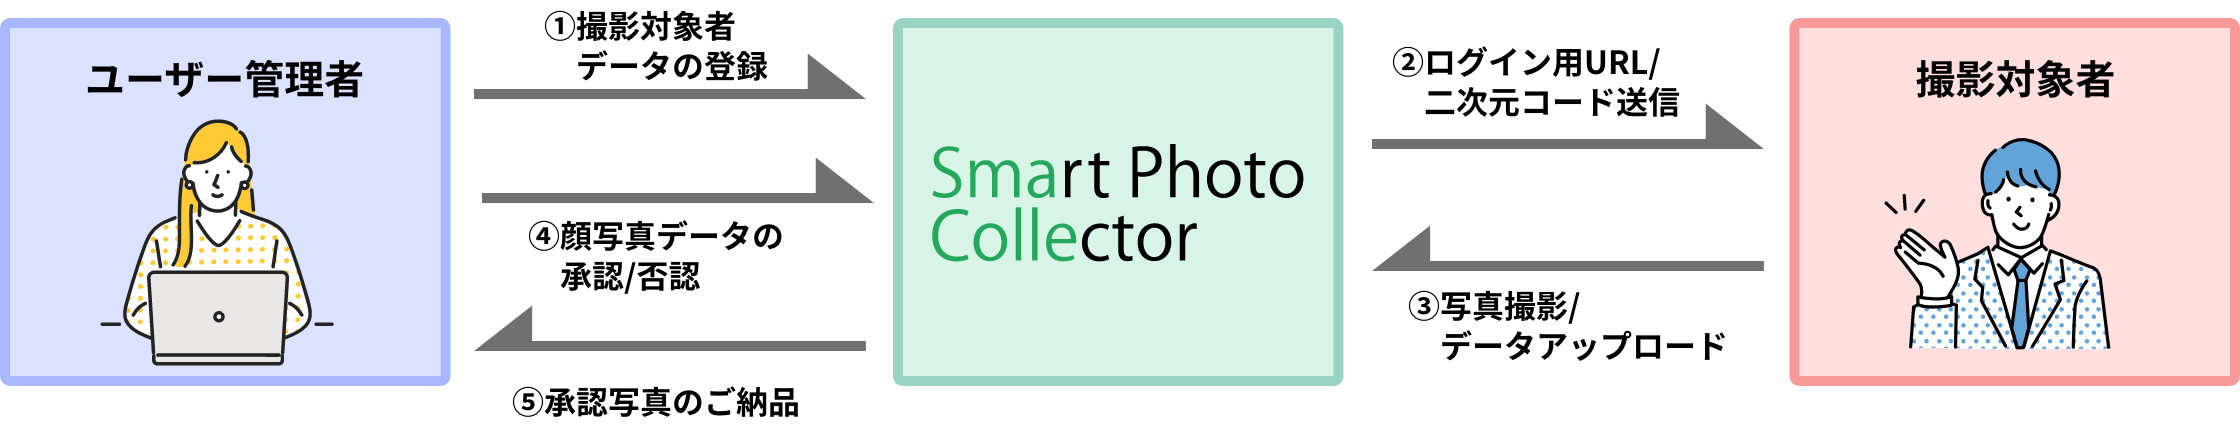 ユーザー管理者と撮影対象者間のSmart Photo Collectorご利用の流れの図解